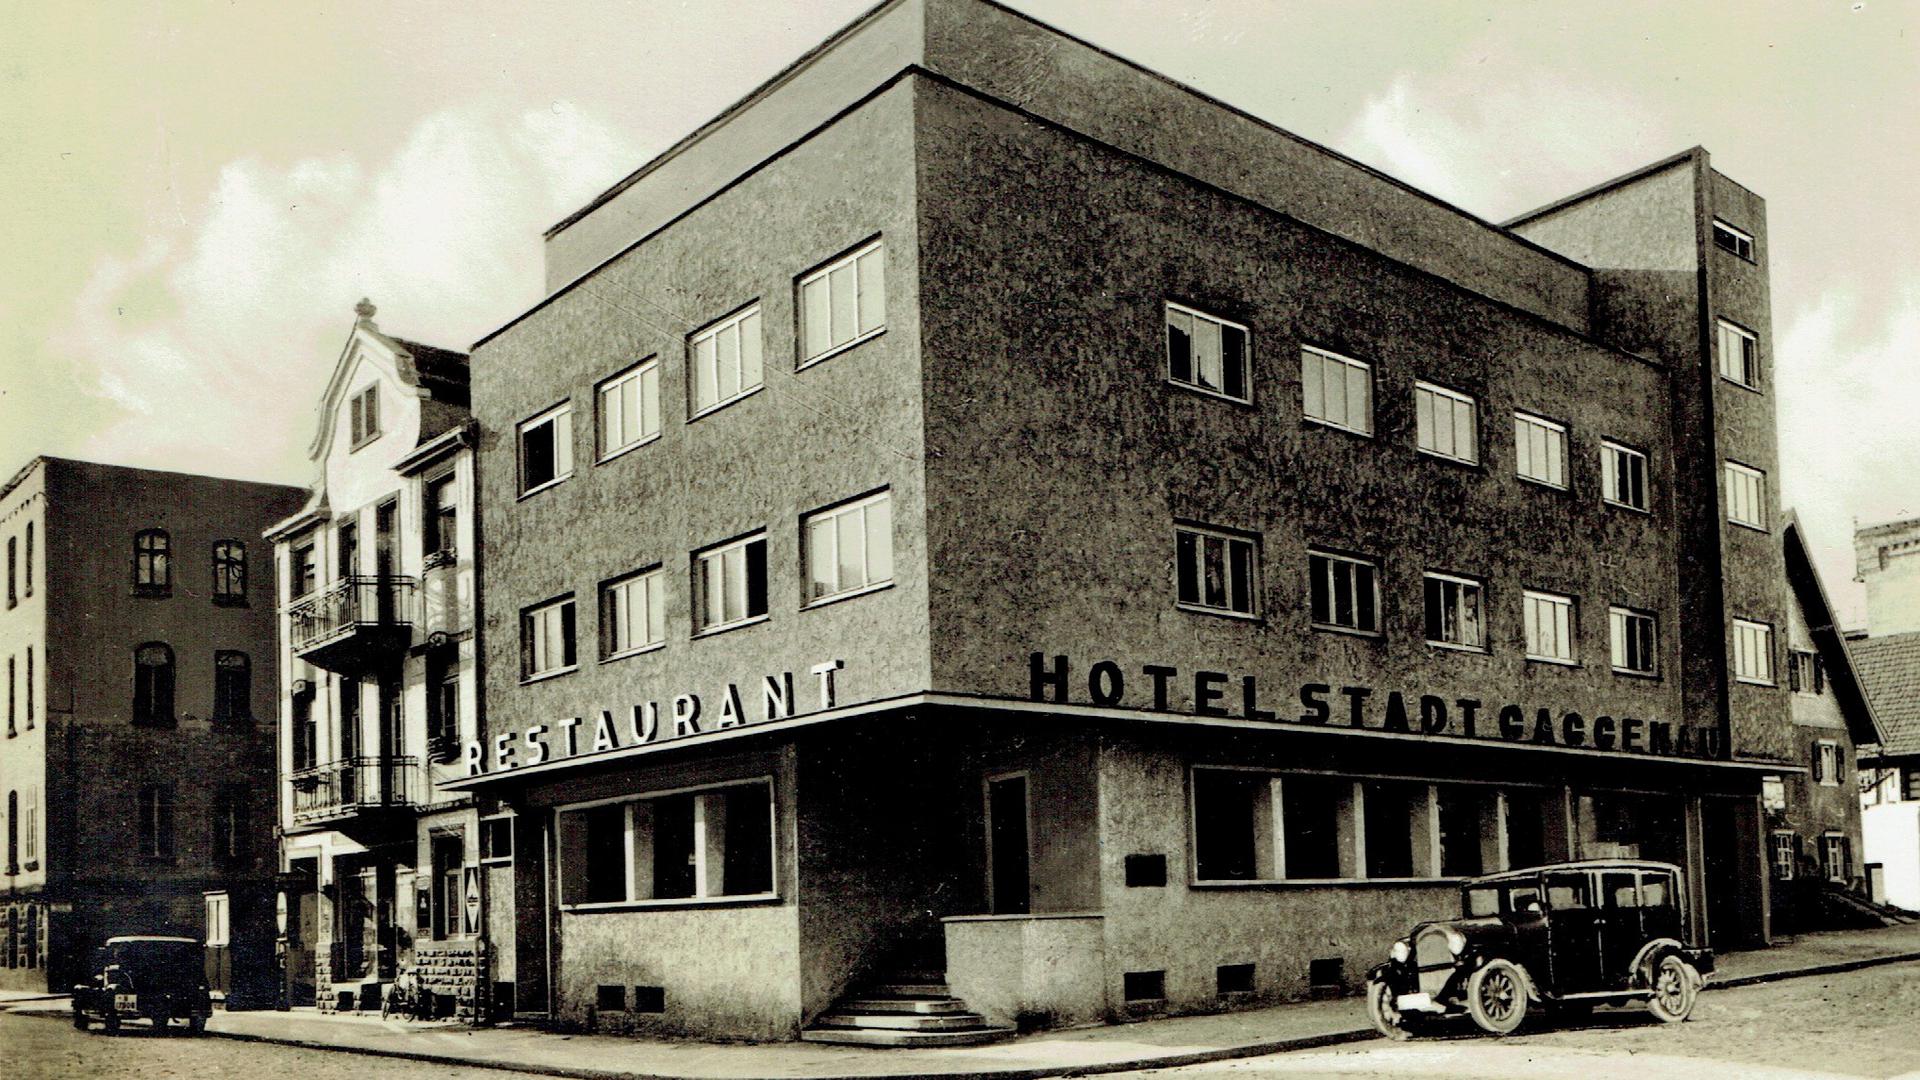 Historisches Foto des Hotel Stadt Gaggenau mitten in Gaggenau.